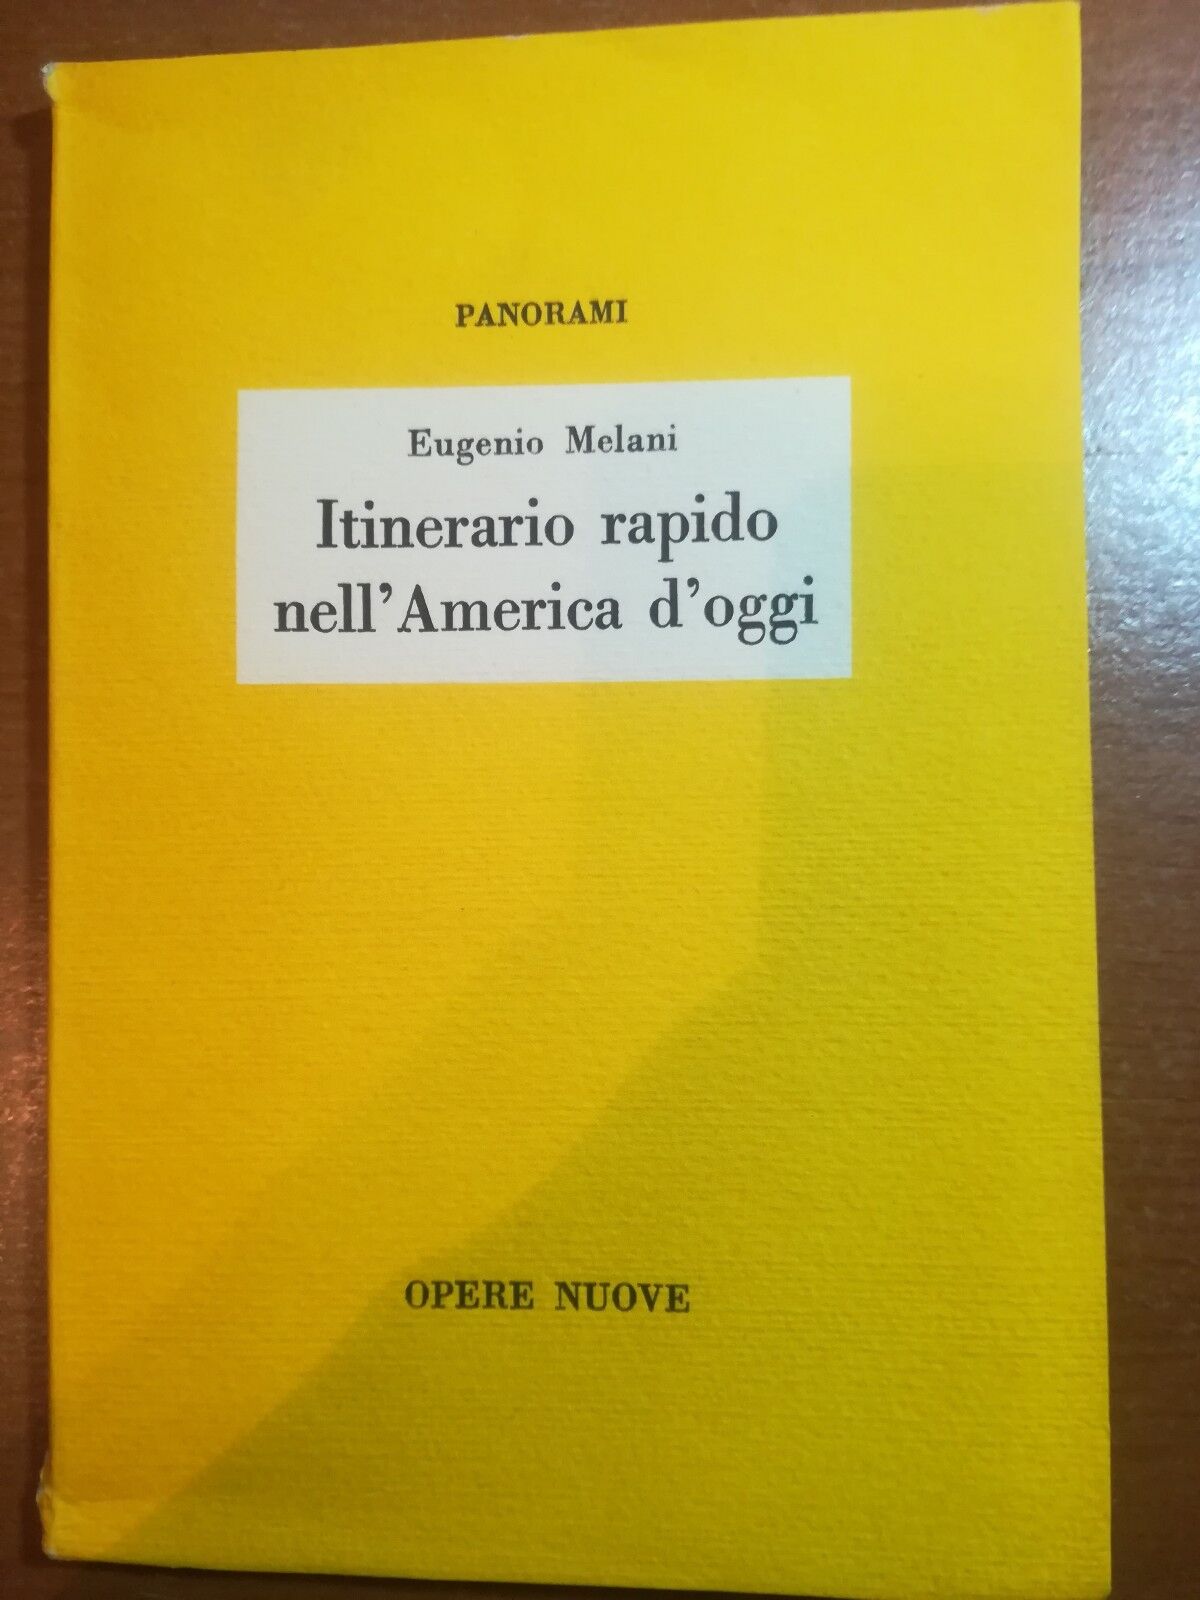 Itinerario rapido nell'America d'oggi - Eugenio Melani - Opere Nuove - 1959 - M